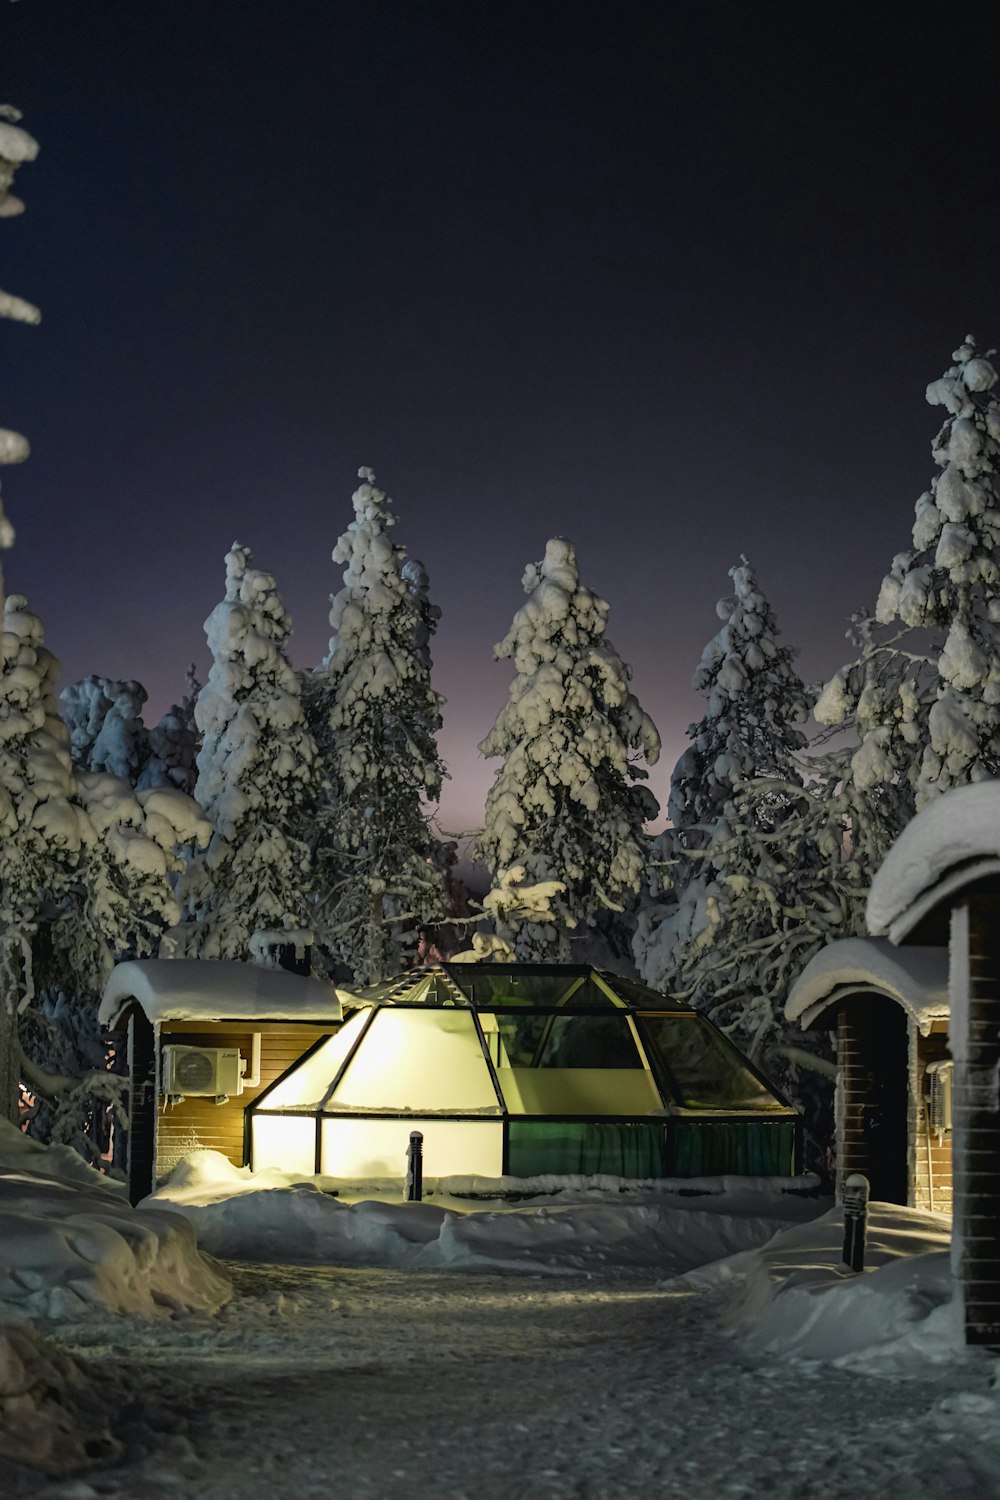 Eine nächtliche Szene einer Hütte im Wald